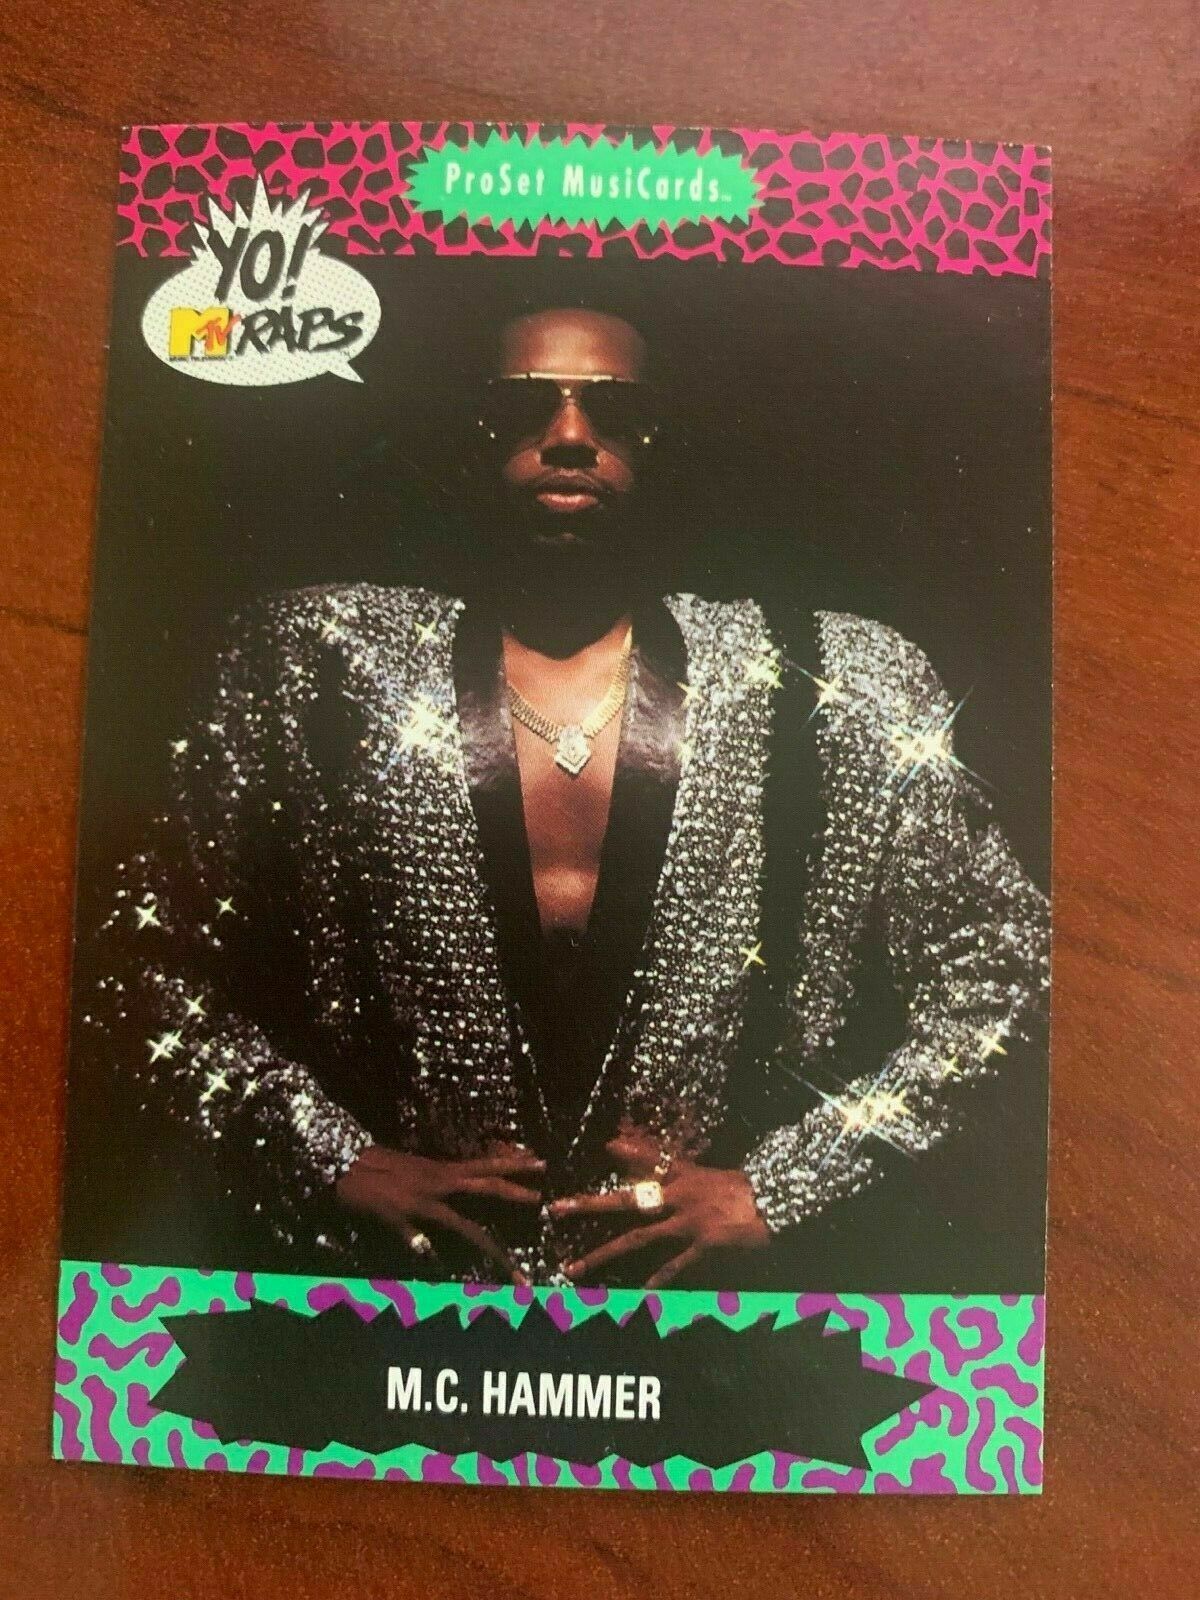 1991 Yo! MTV Raps Pro Set Musicards - Complete Your Set - You Pick